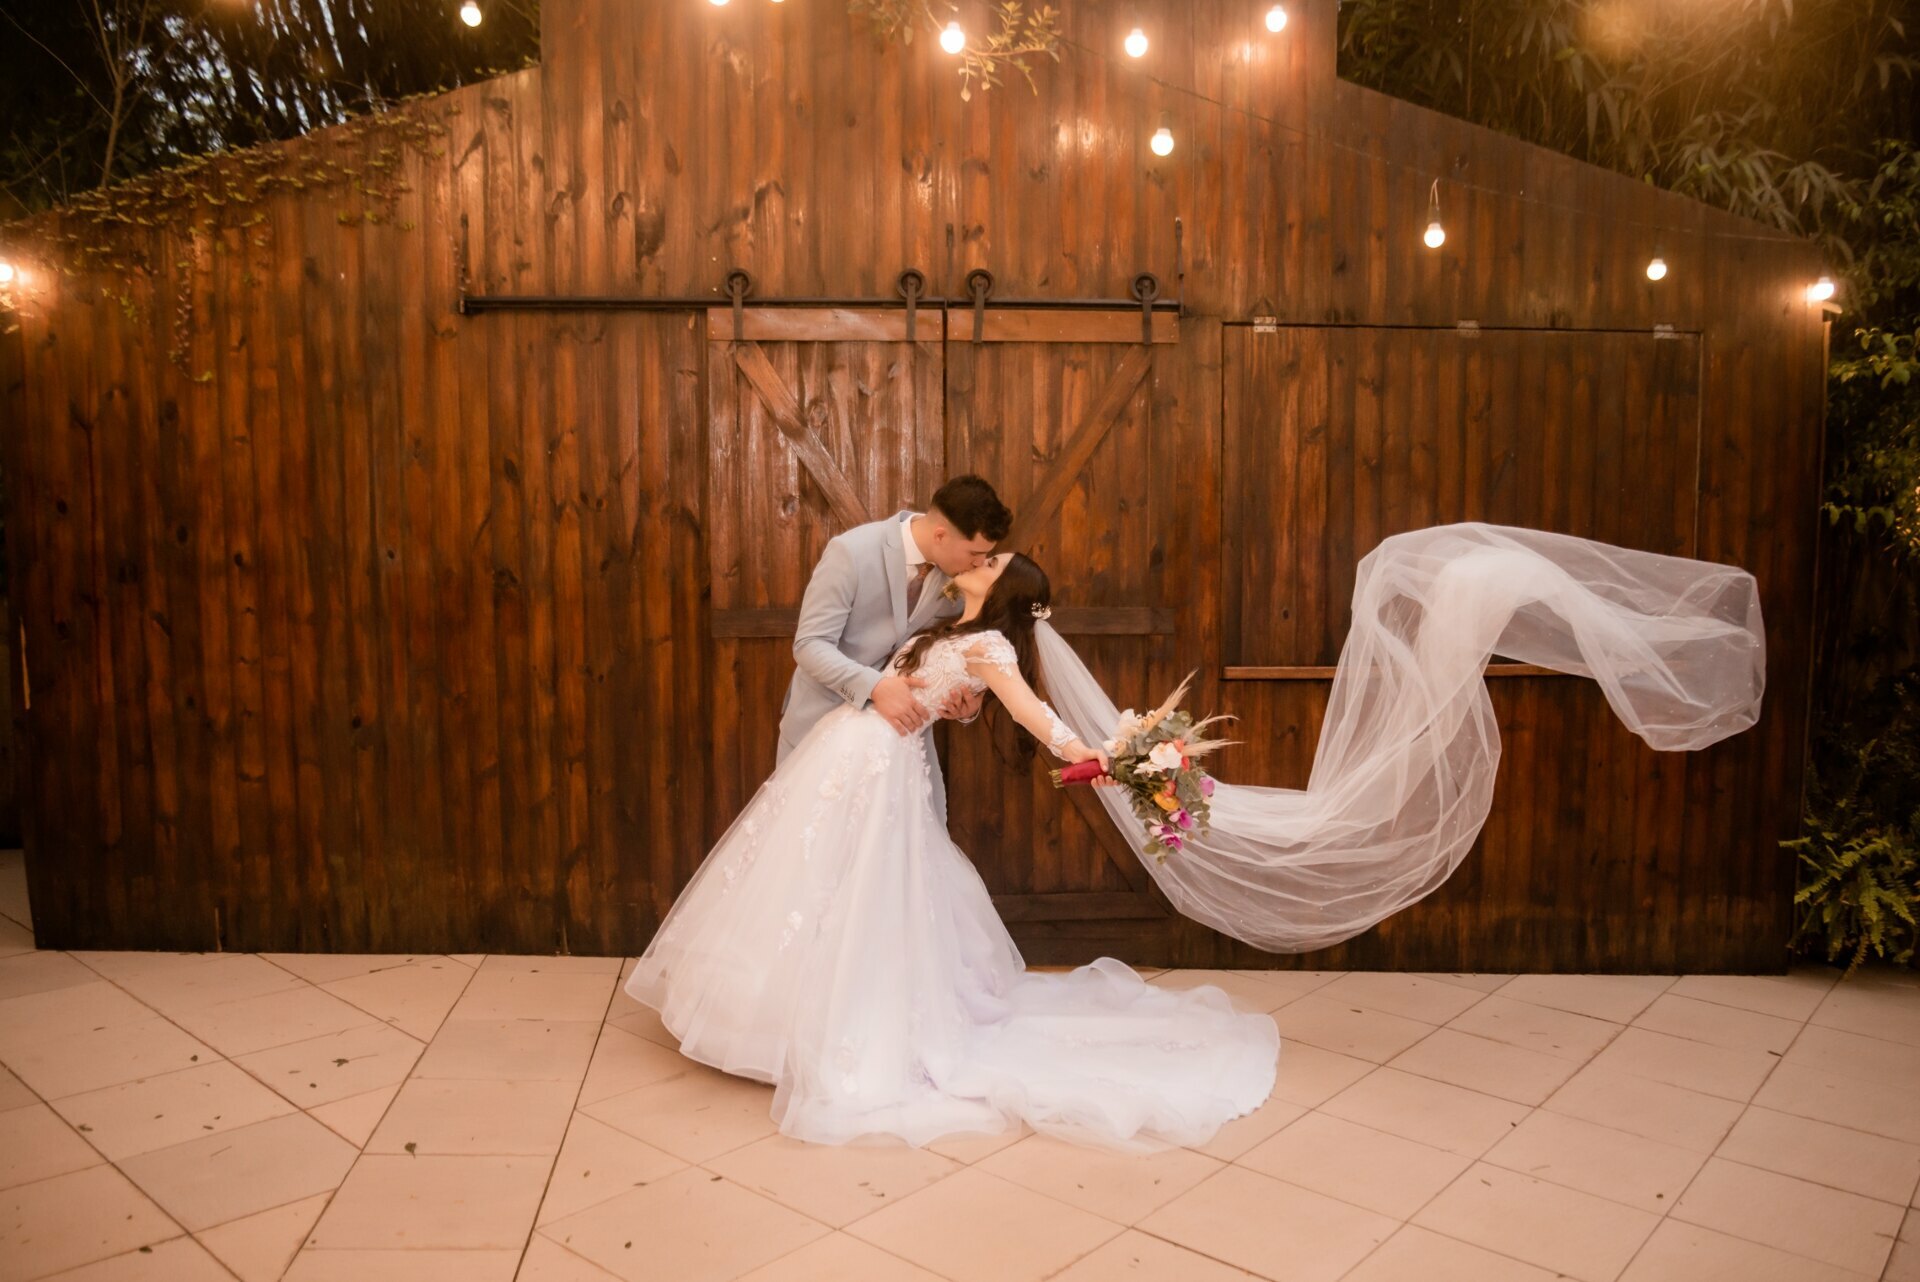 Para noivas e noivos: 10 cuidados fundamentais para o dia do